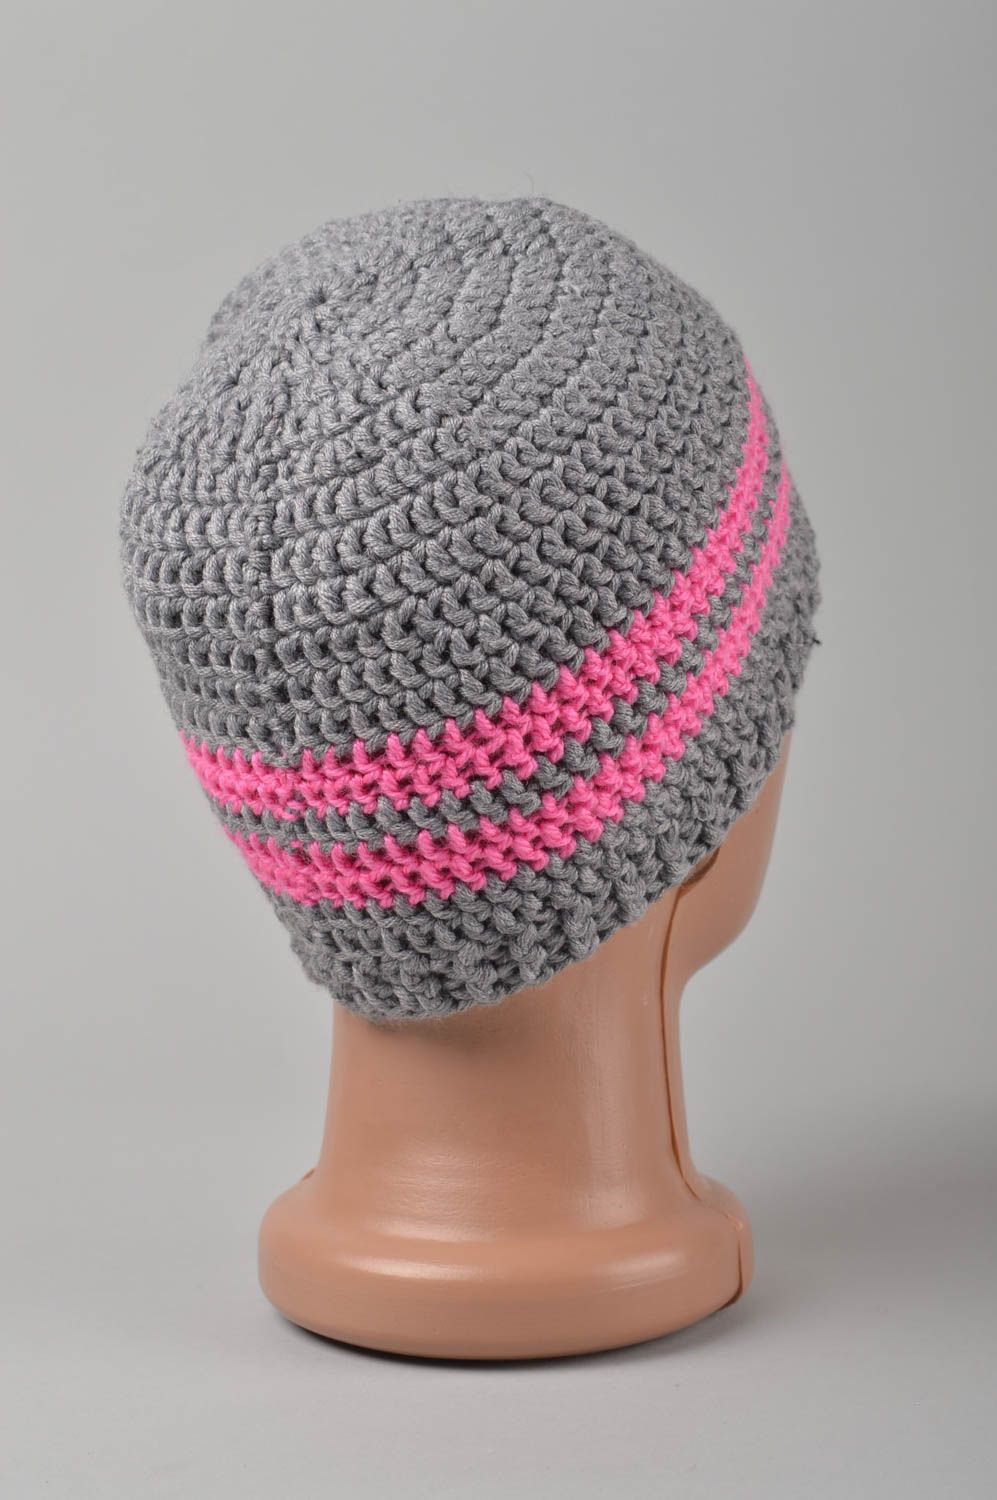 Handmade crocheted baby hat openwork hat for children warm baby hat gift  photo 5